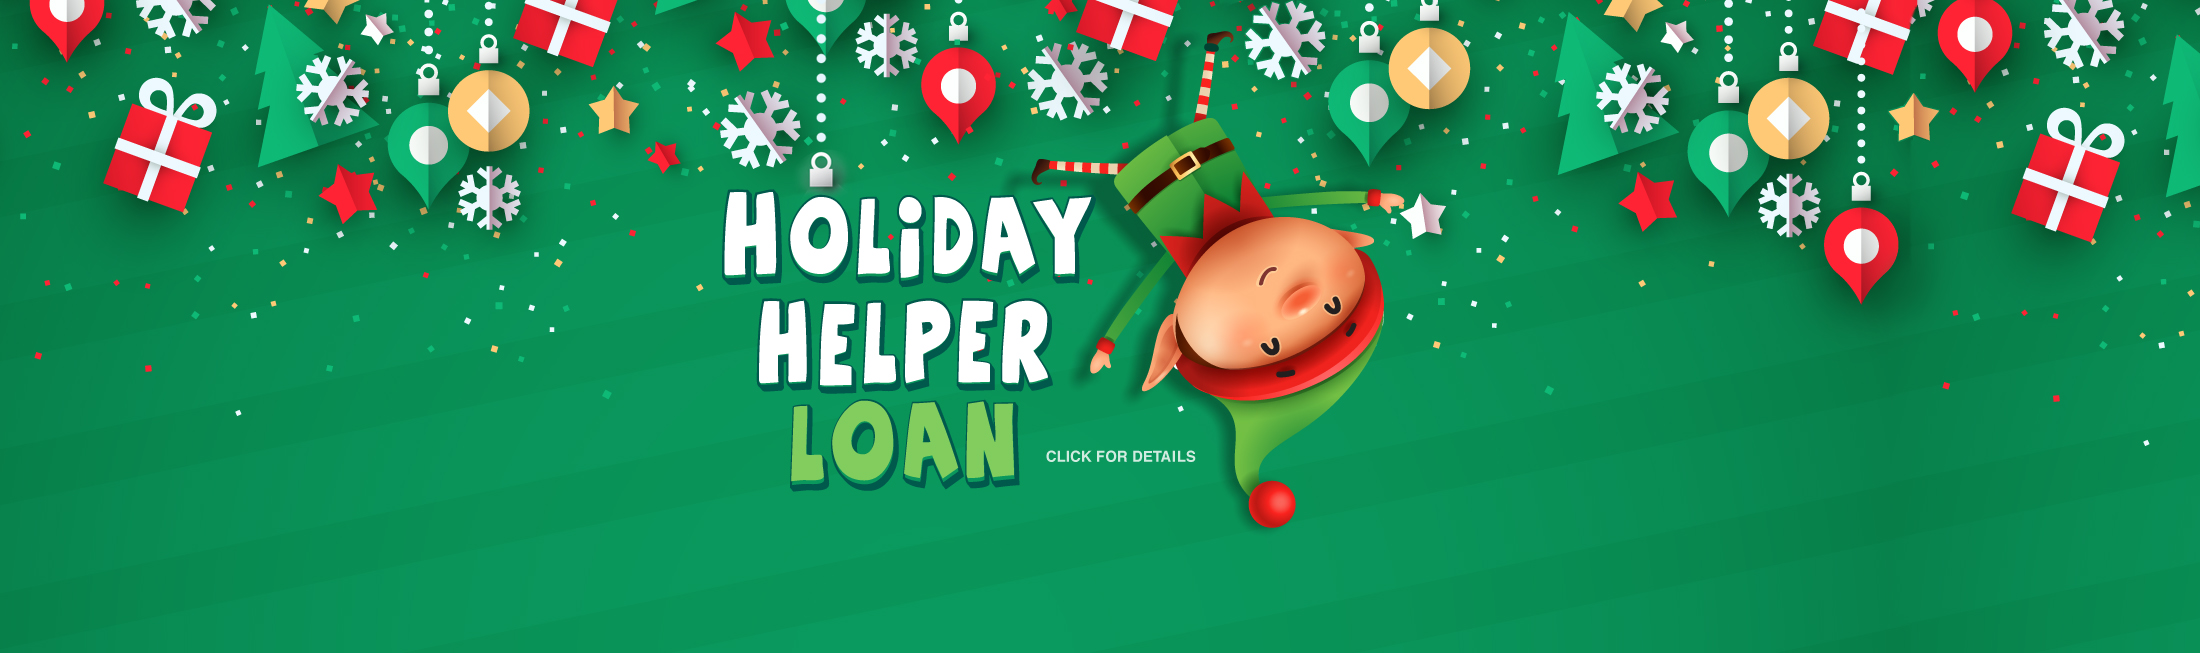 Holiday Helper Loan